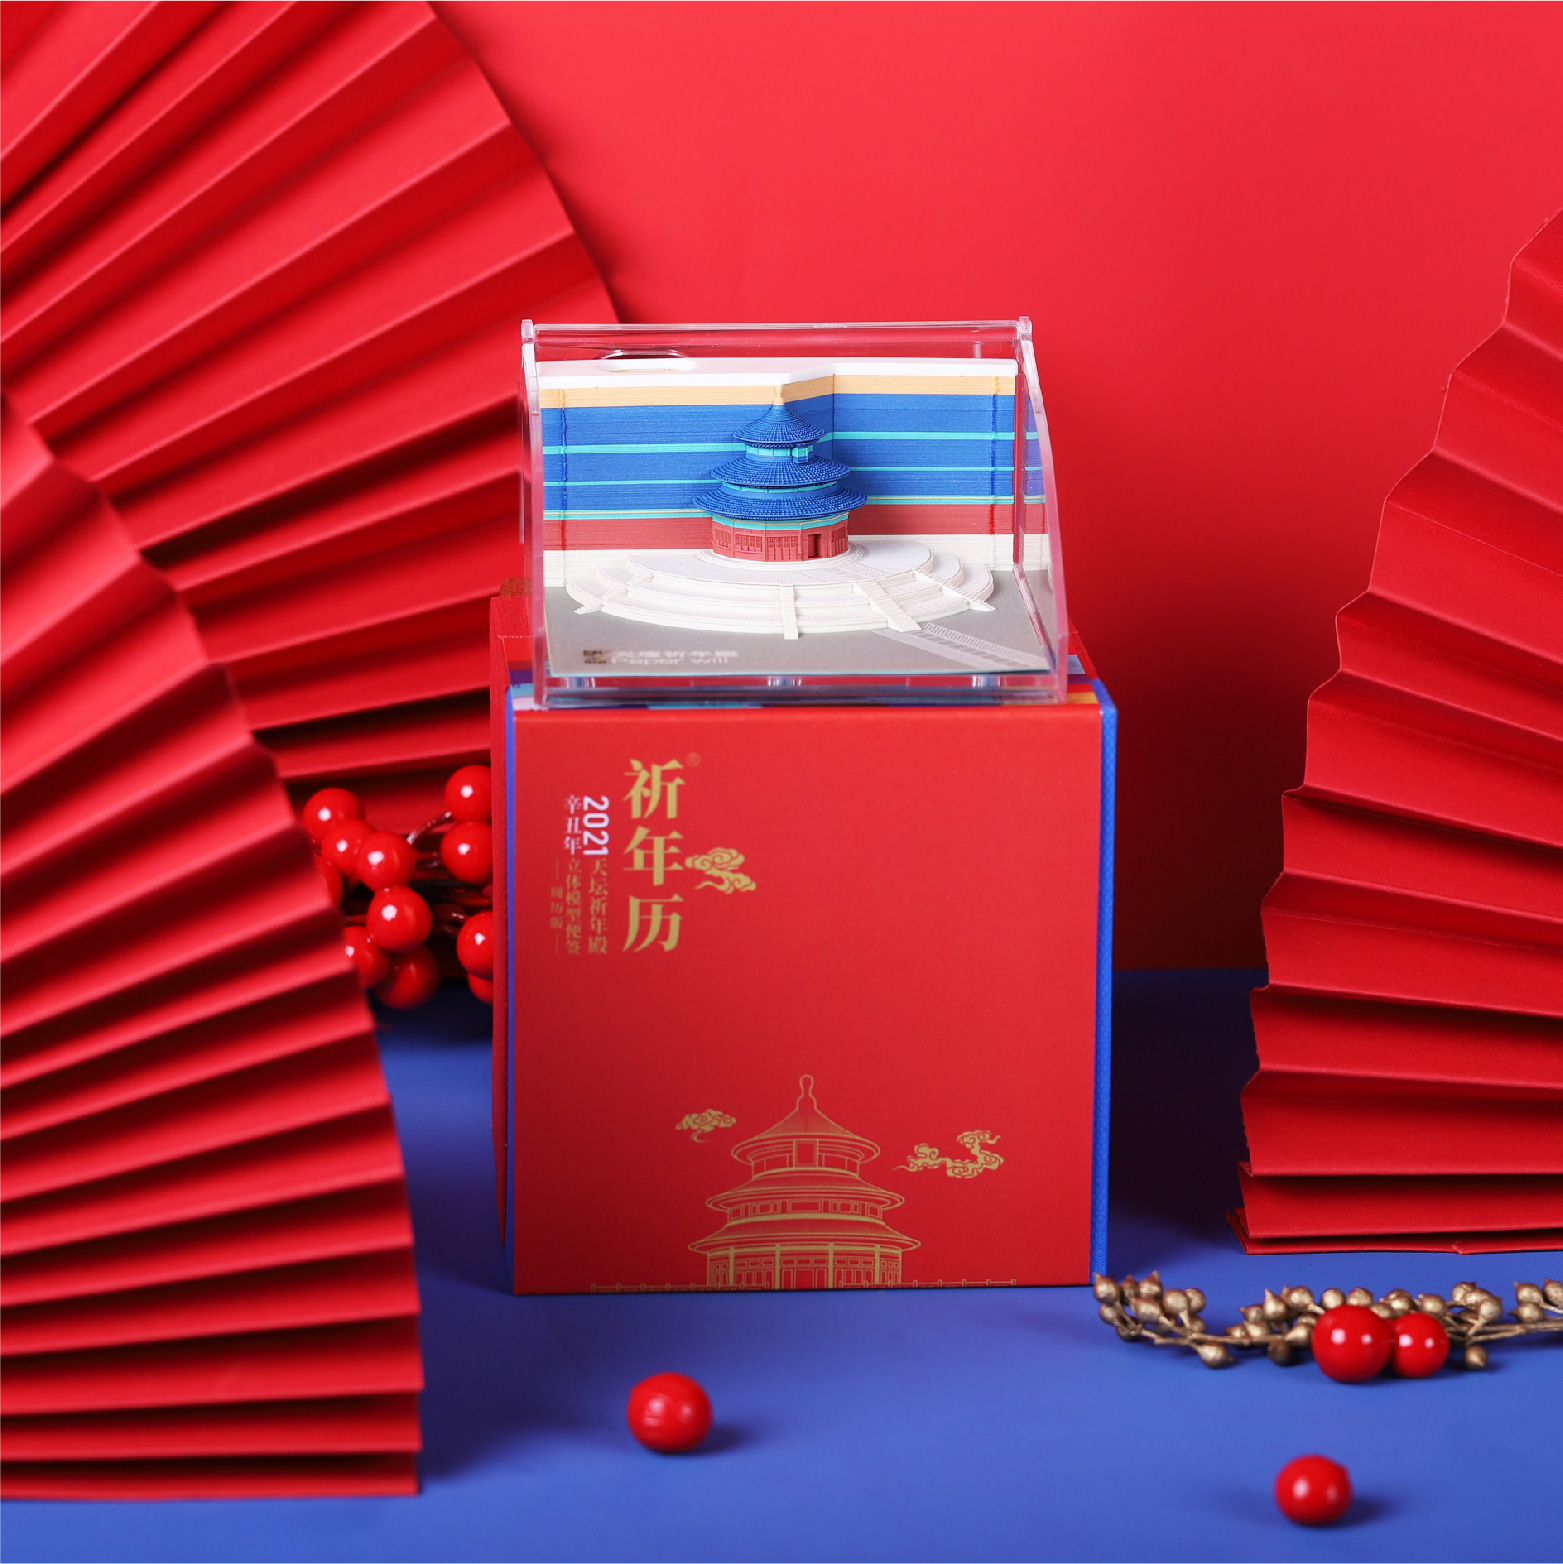 中国风特色日历制作 天坛祈年殿2021台历批发 立体纸雕手撕便签新年礼物定制